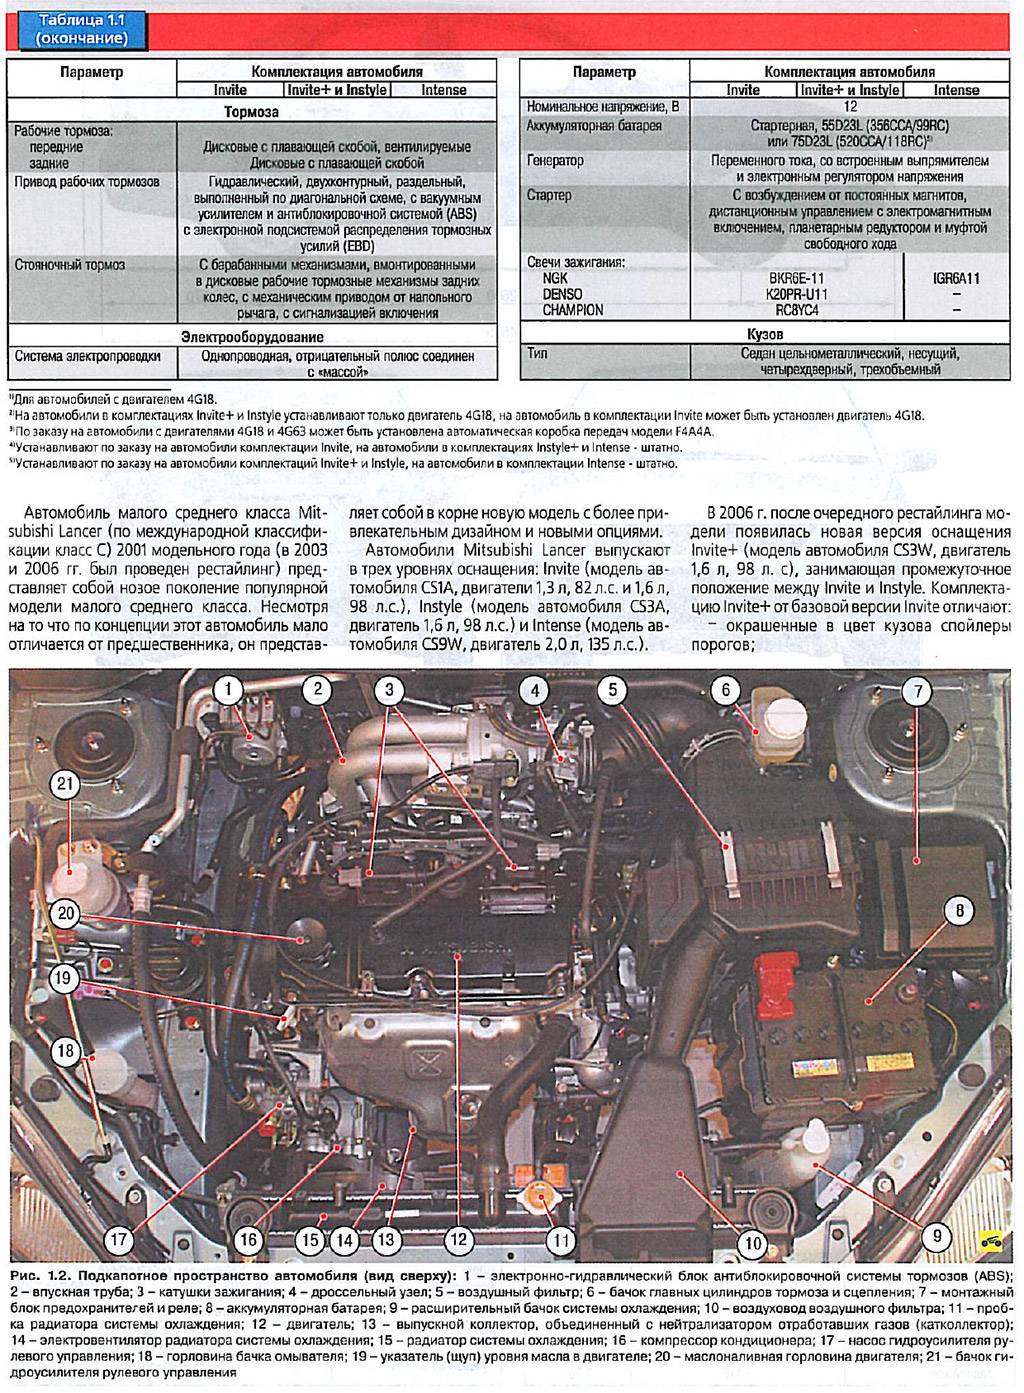 Mitsubishi lancer 9 технические характеристики (лансер 9)